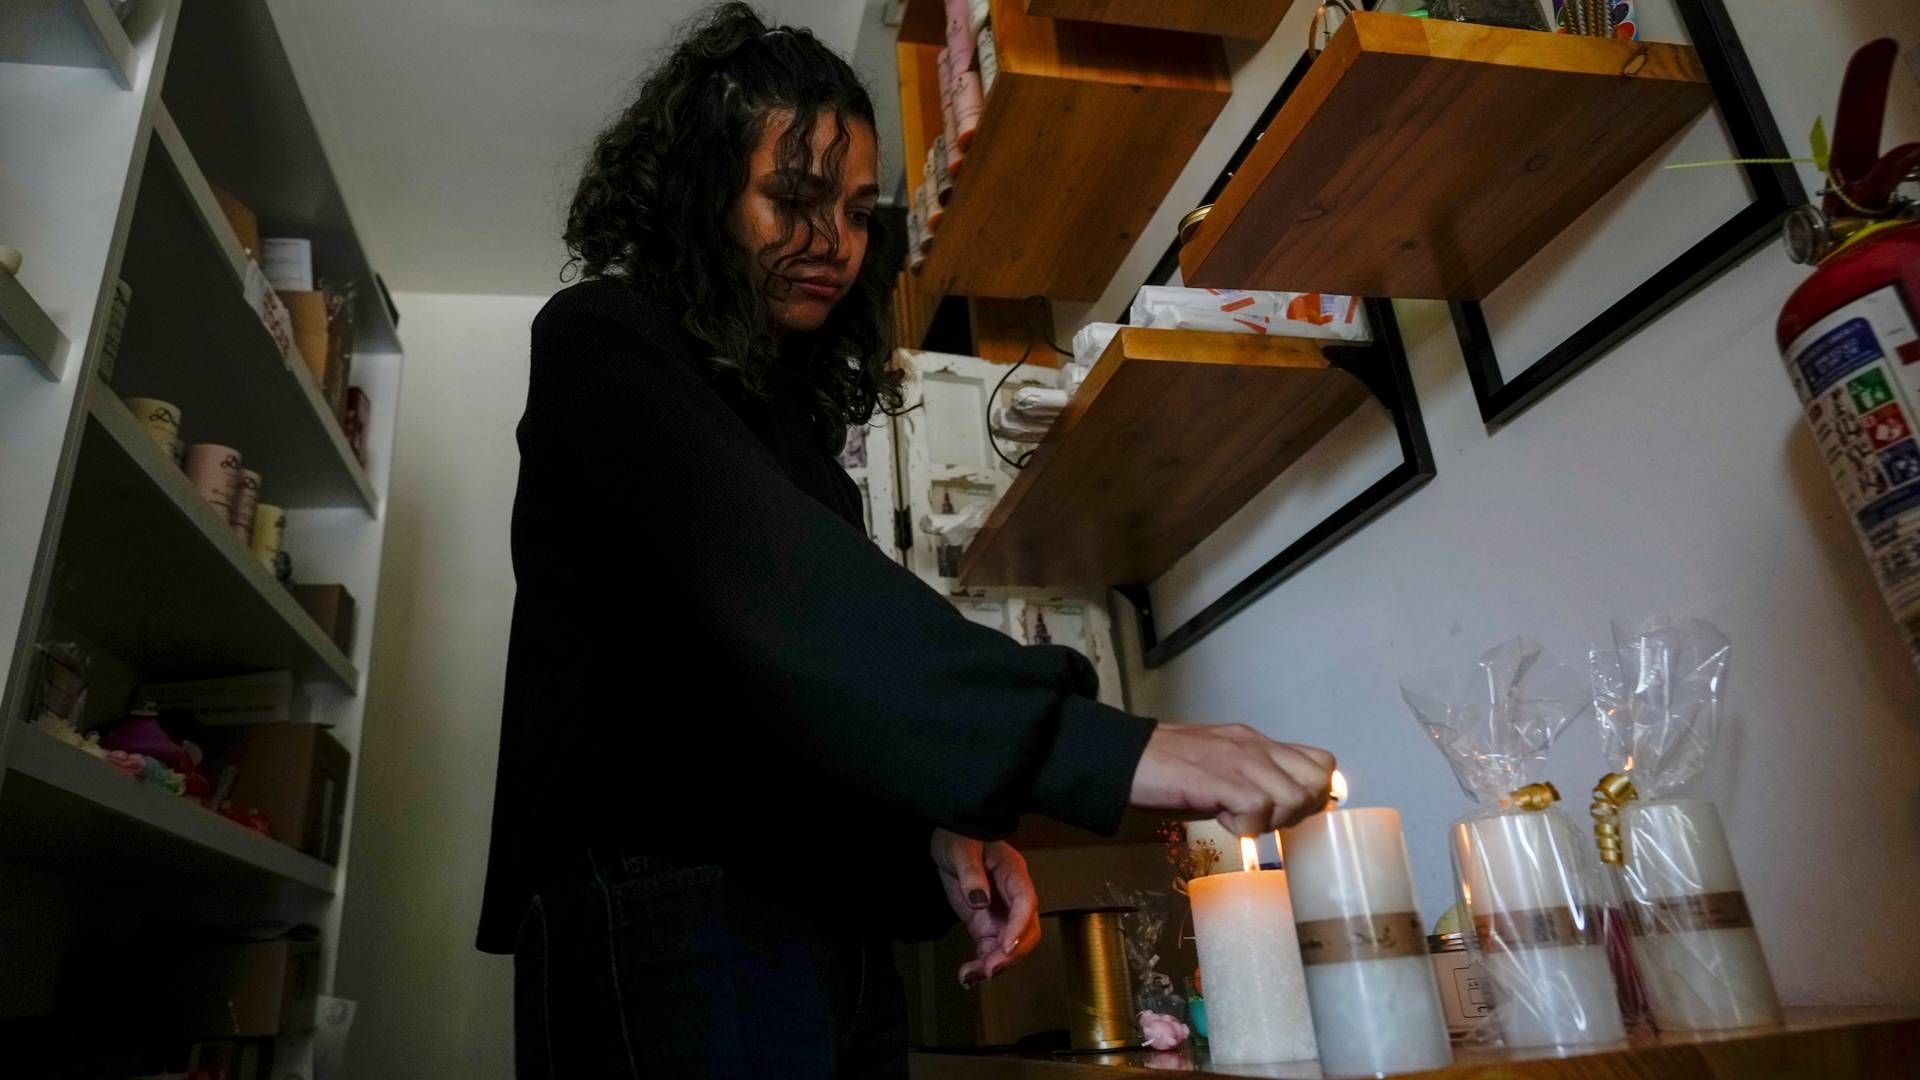 Rasjonering av strøm er realitet i Ecuador denne uken etter at myndighetene har erklært strømkrise som følge av tørke. Bildet er fra en butikk i hovedstaden Quito der en kvinne tenner stearinlys etter at strømmen er blitt kuttet. | Foto: Dolores Ochoa / AP / NTB